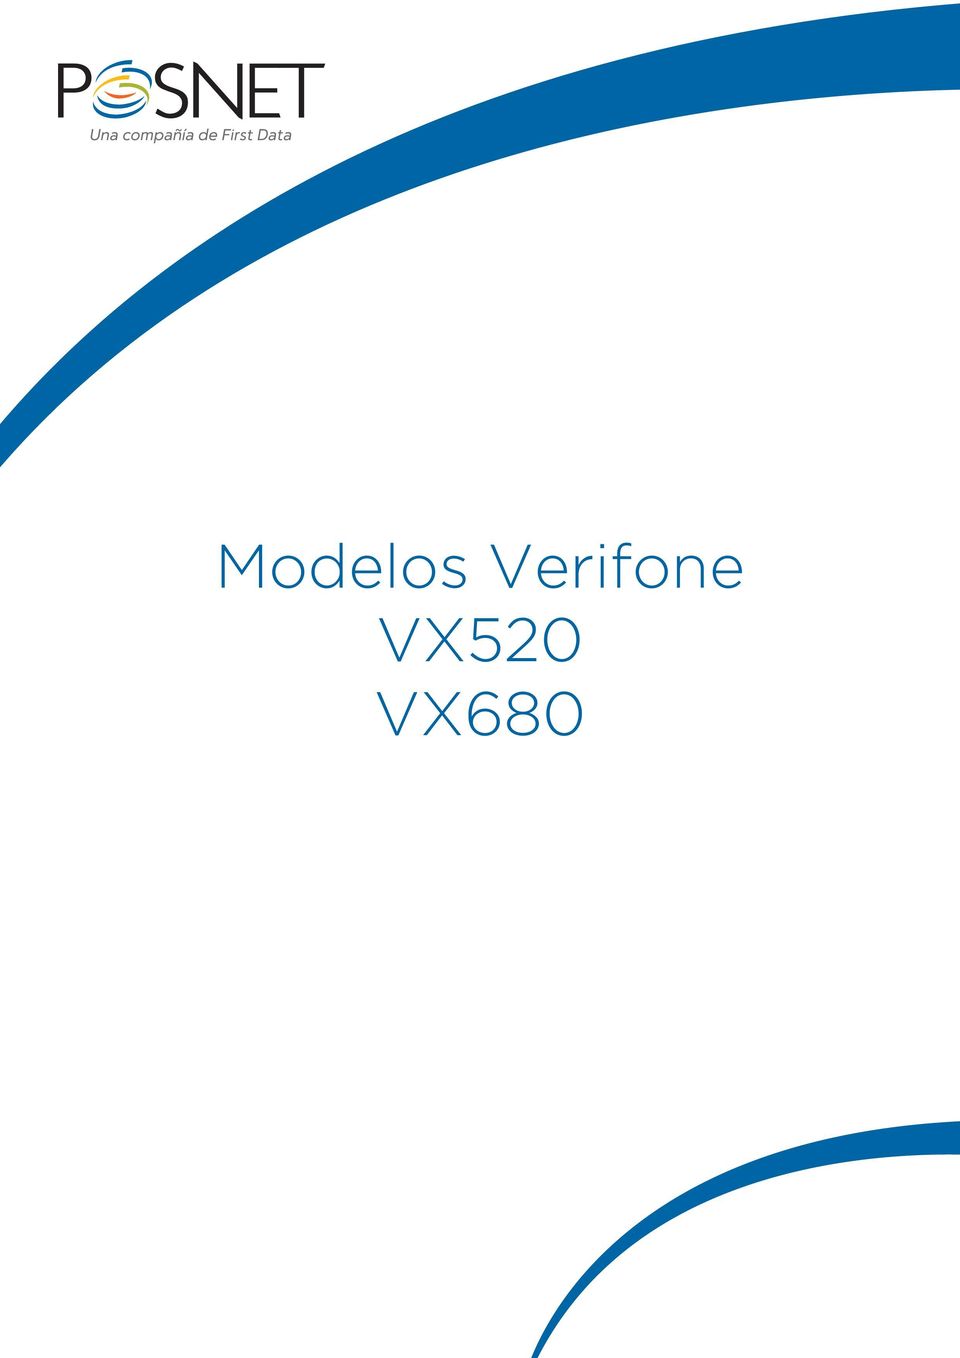 VX520